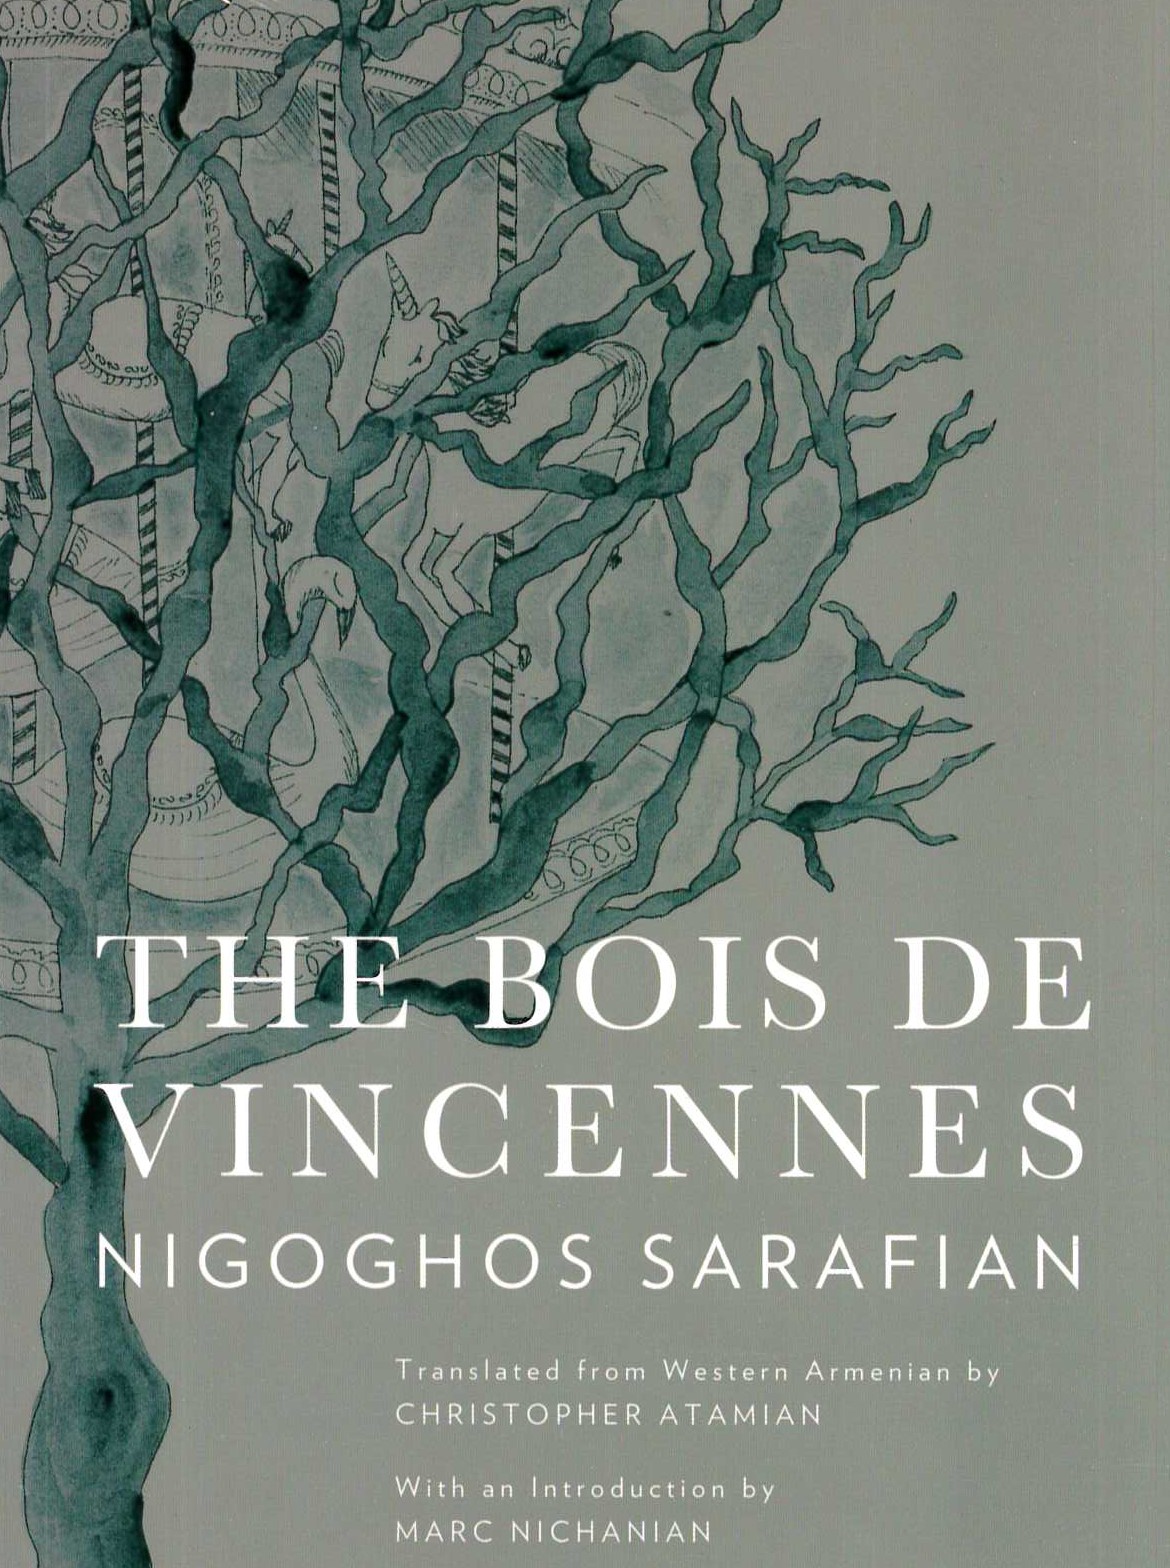 Book cover: Sarafian, Nigoghos, The Bois de Vincennes